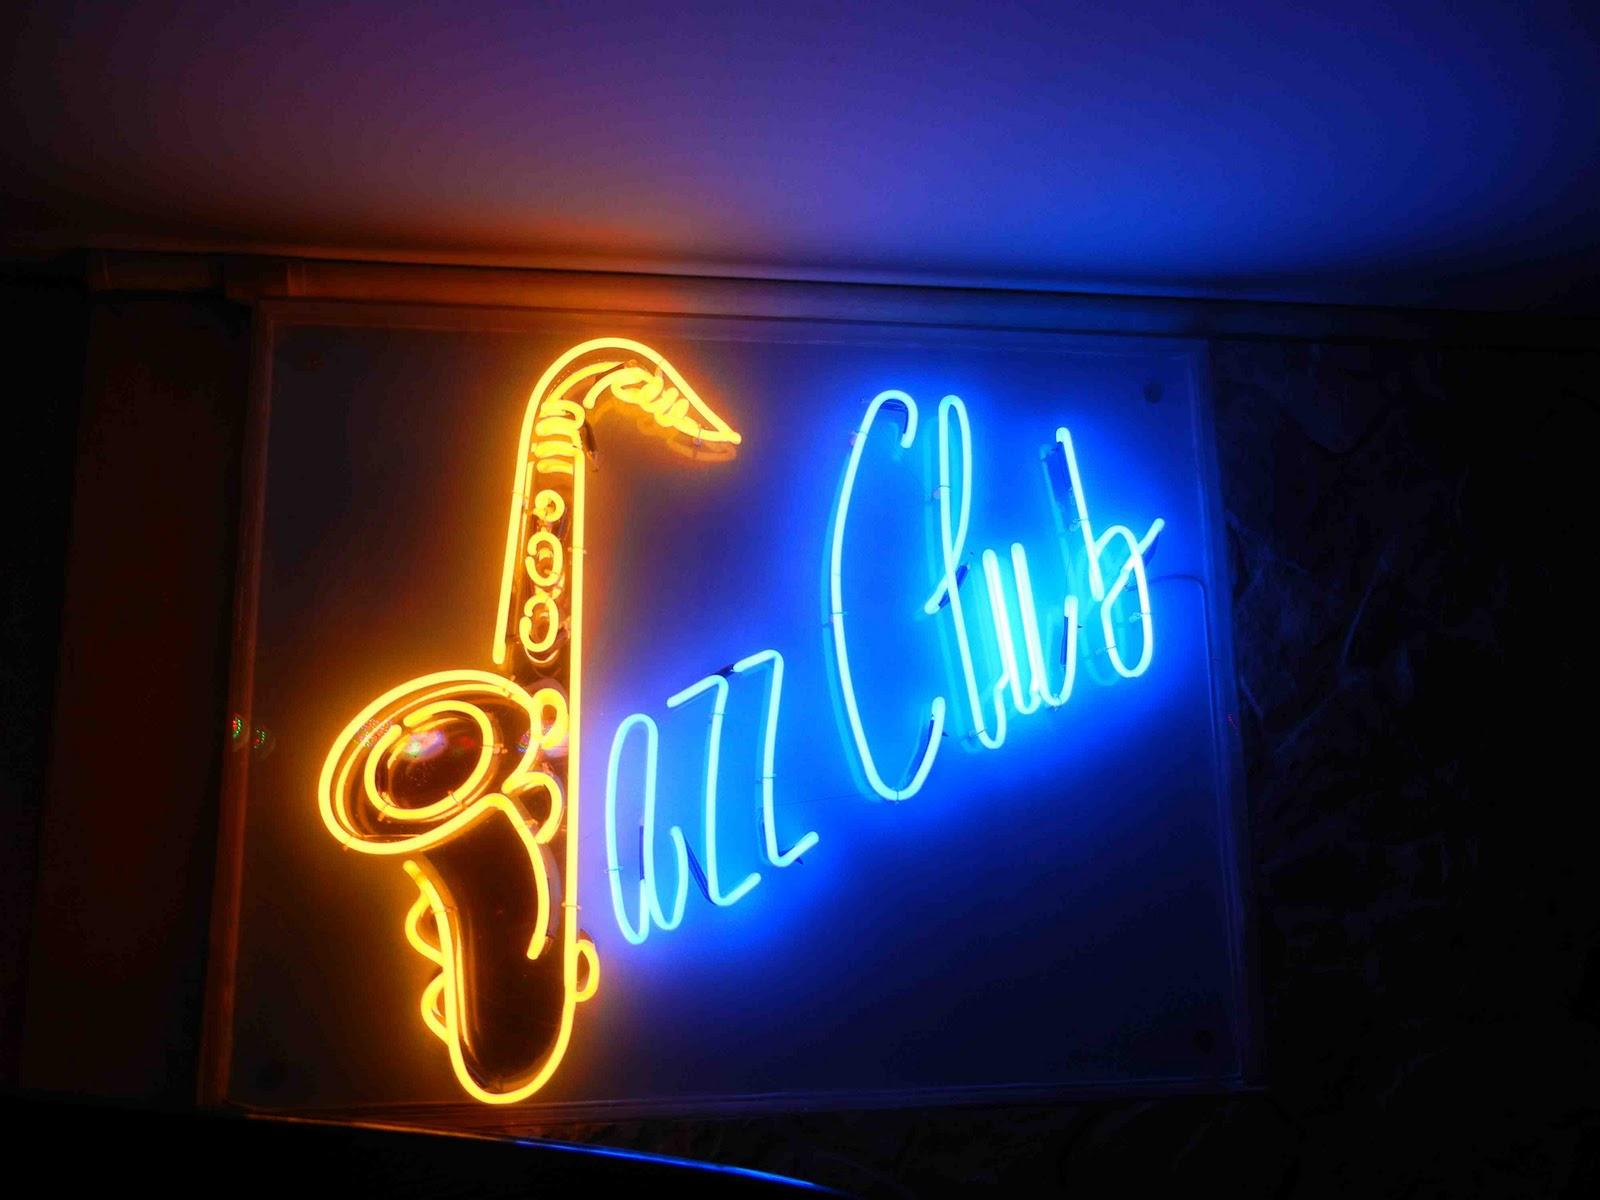 Джаз клуб